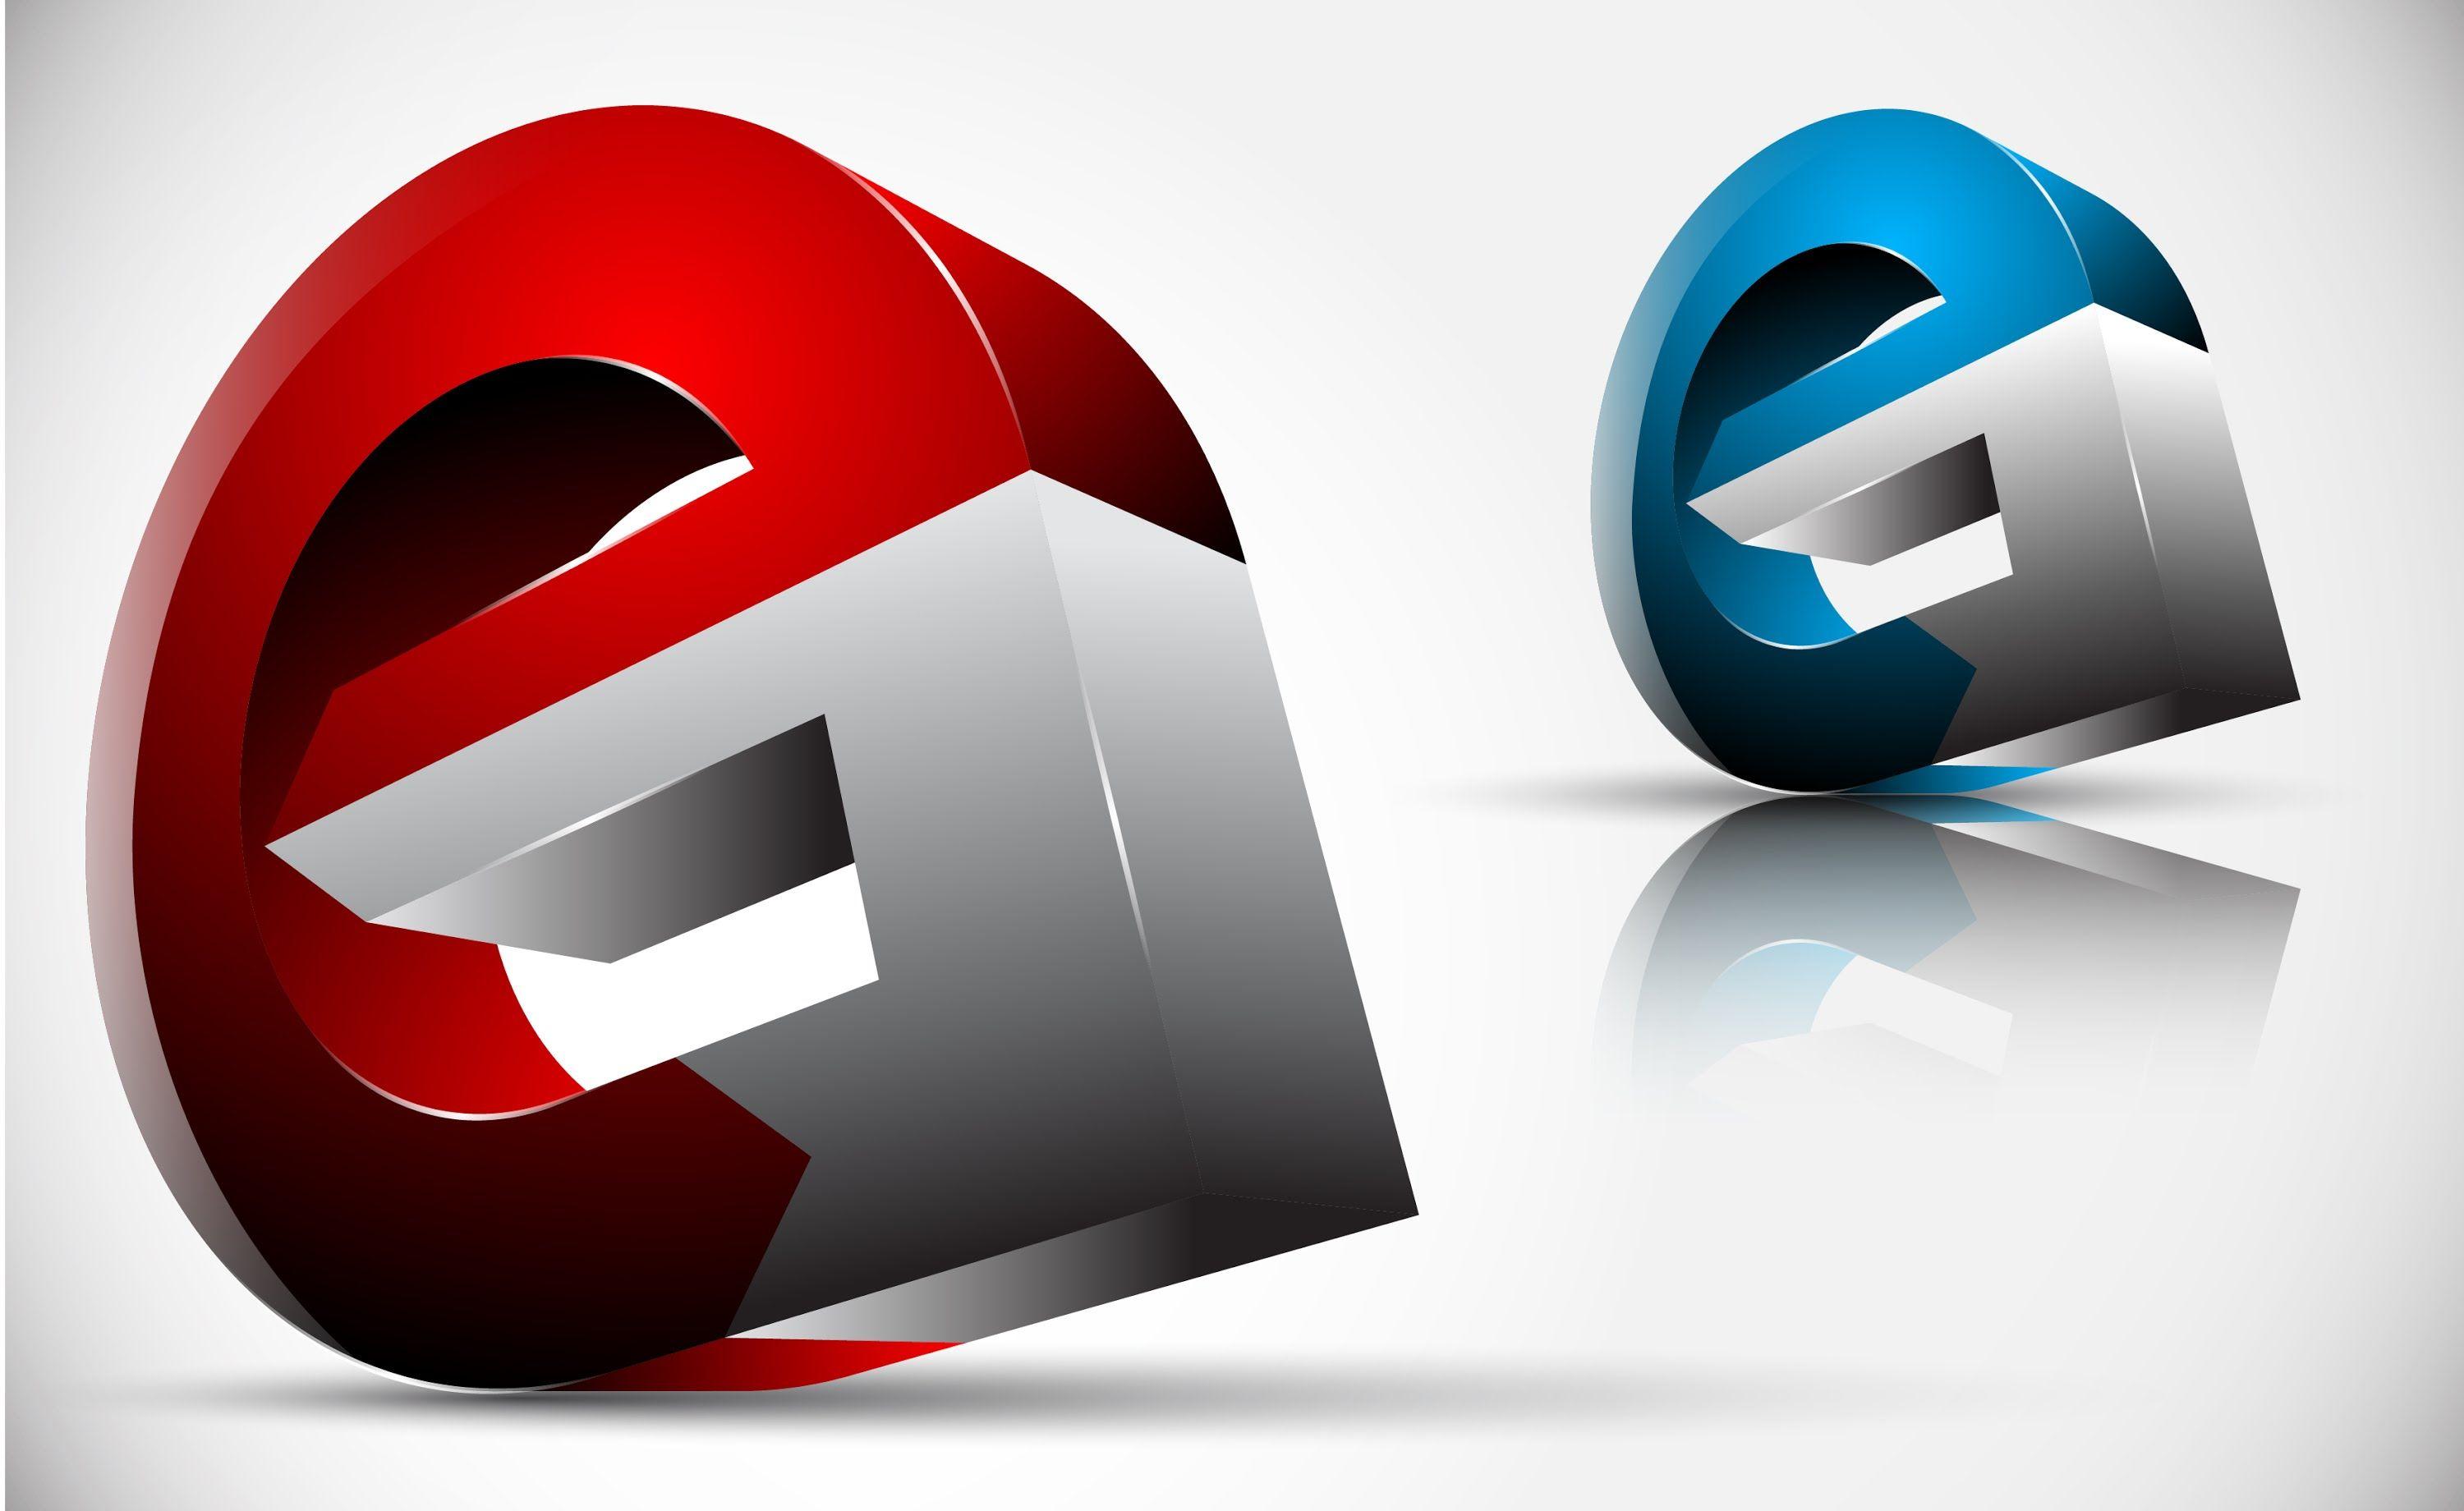 3 д логотип. Фотошоп логотип. Логотип с 3d эффектом. 3 D логотип в иллюстраторе.